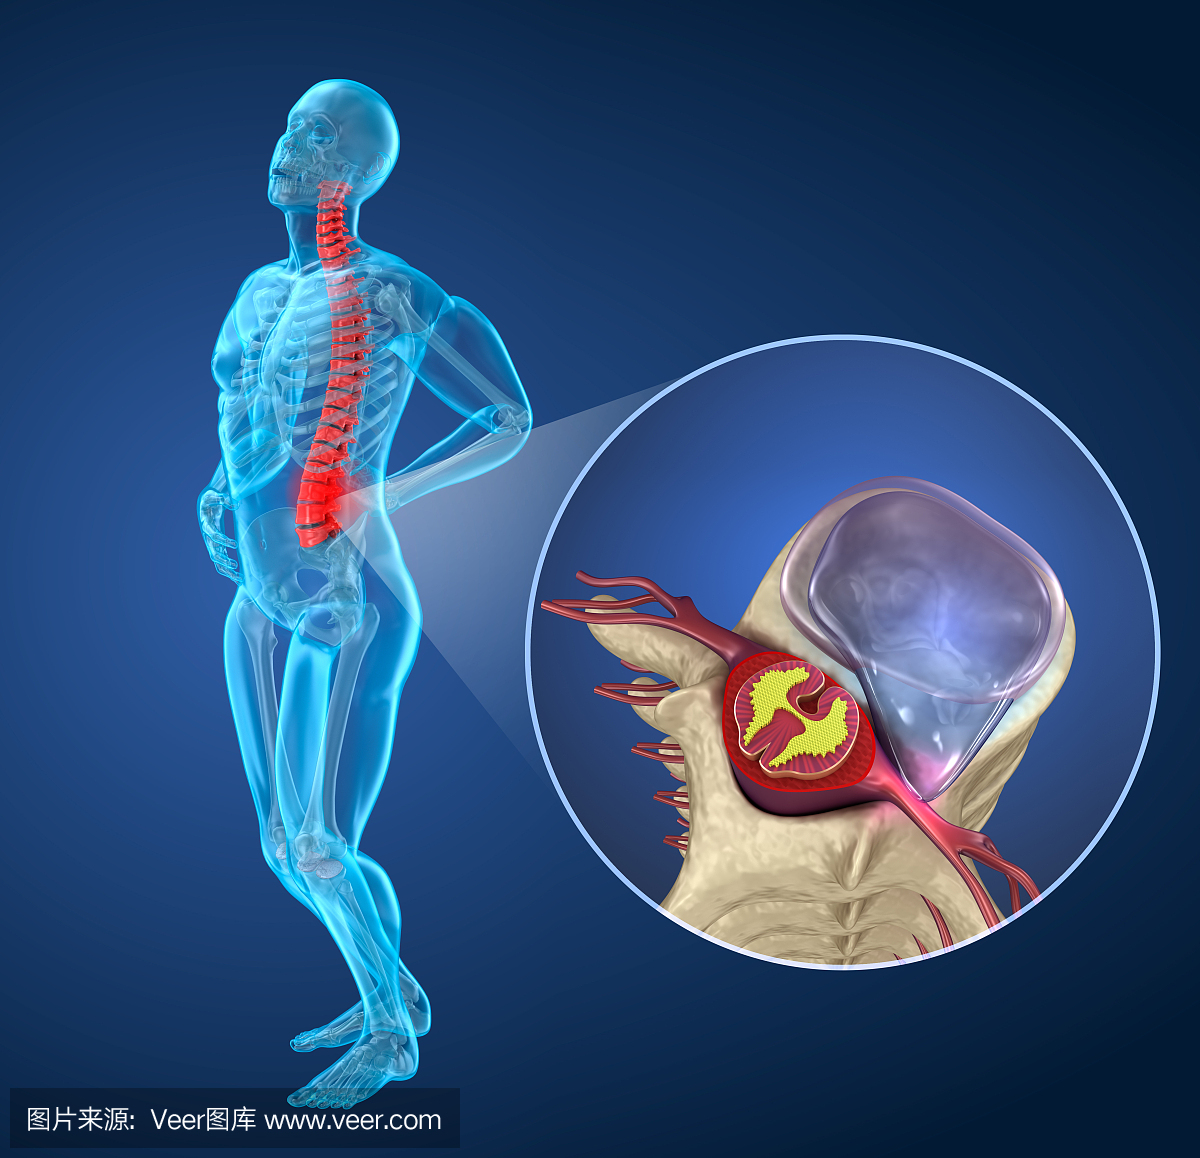 脊椎疼痛椎间盘突出后发作,男性患脊柱疼痛。